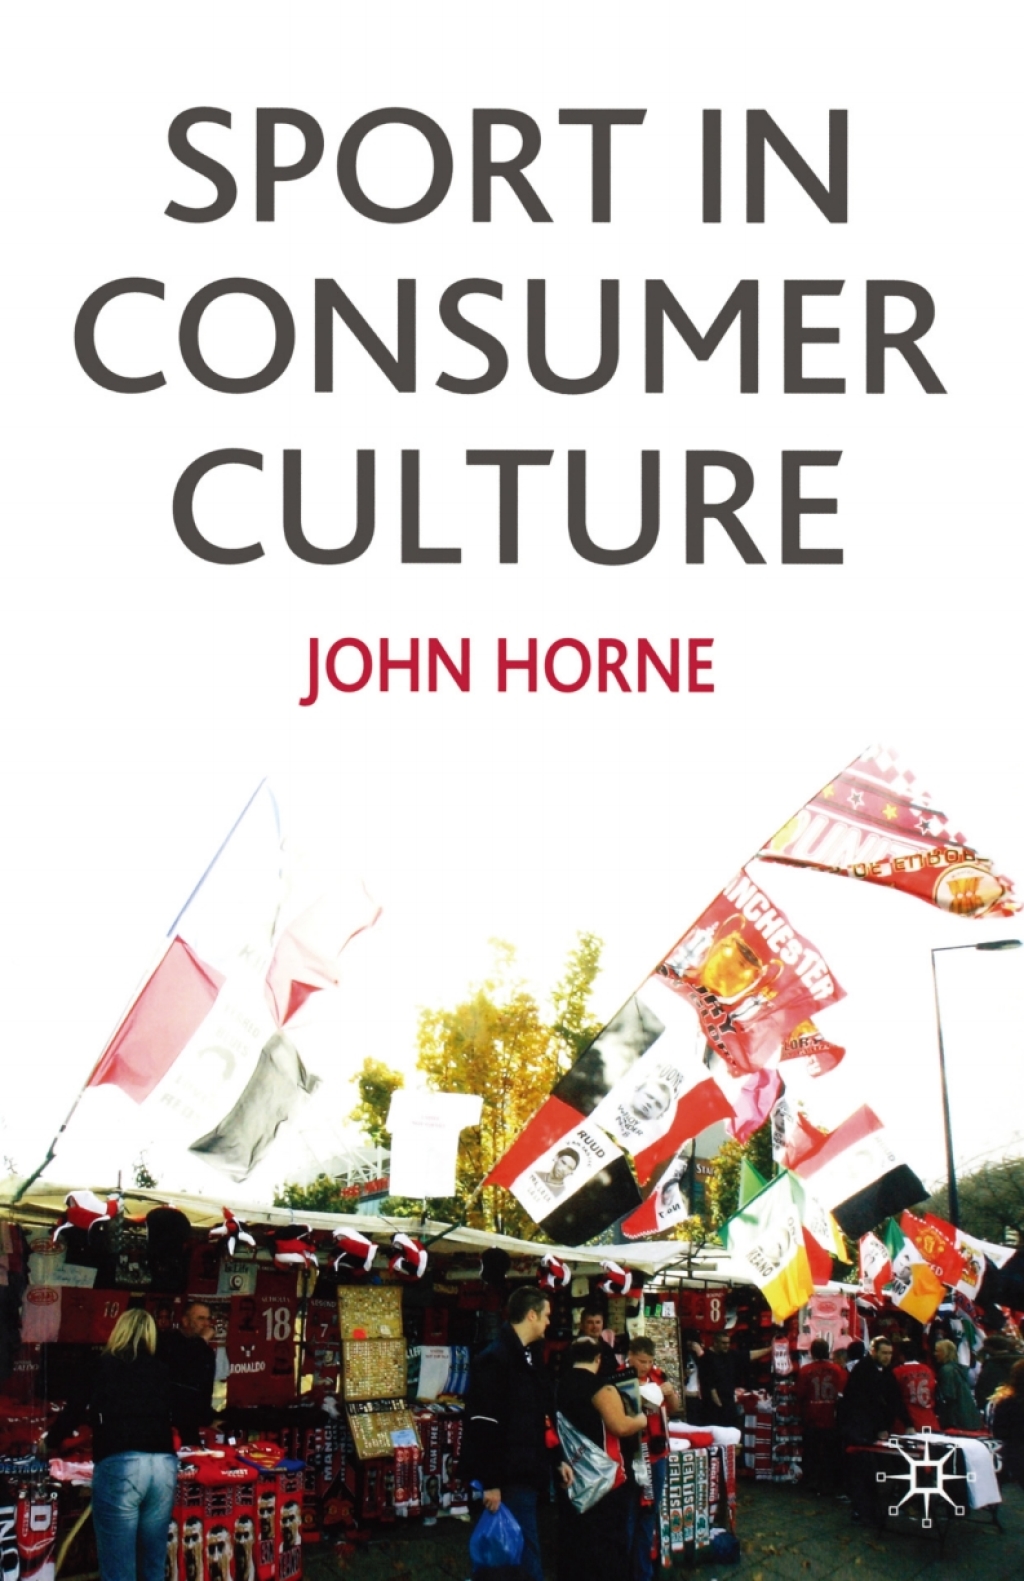 Sport In Consumer Culture (eBook Rental)